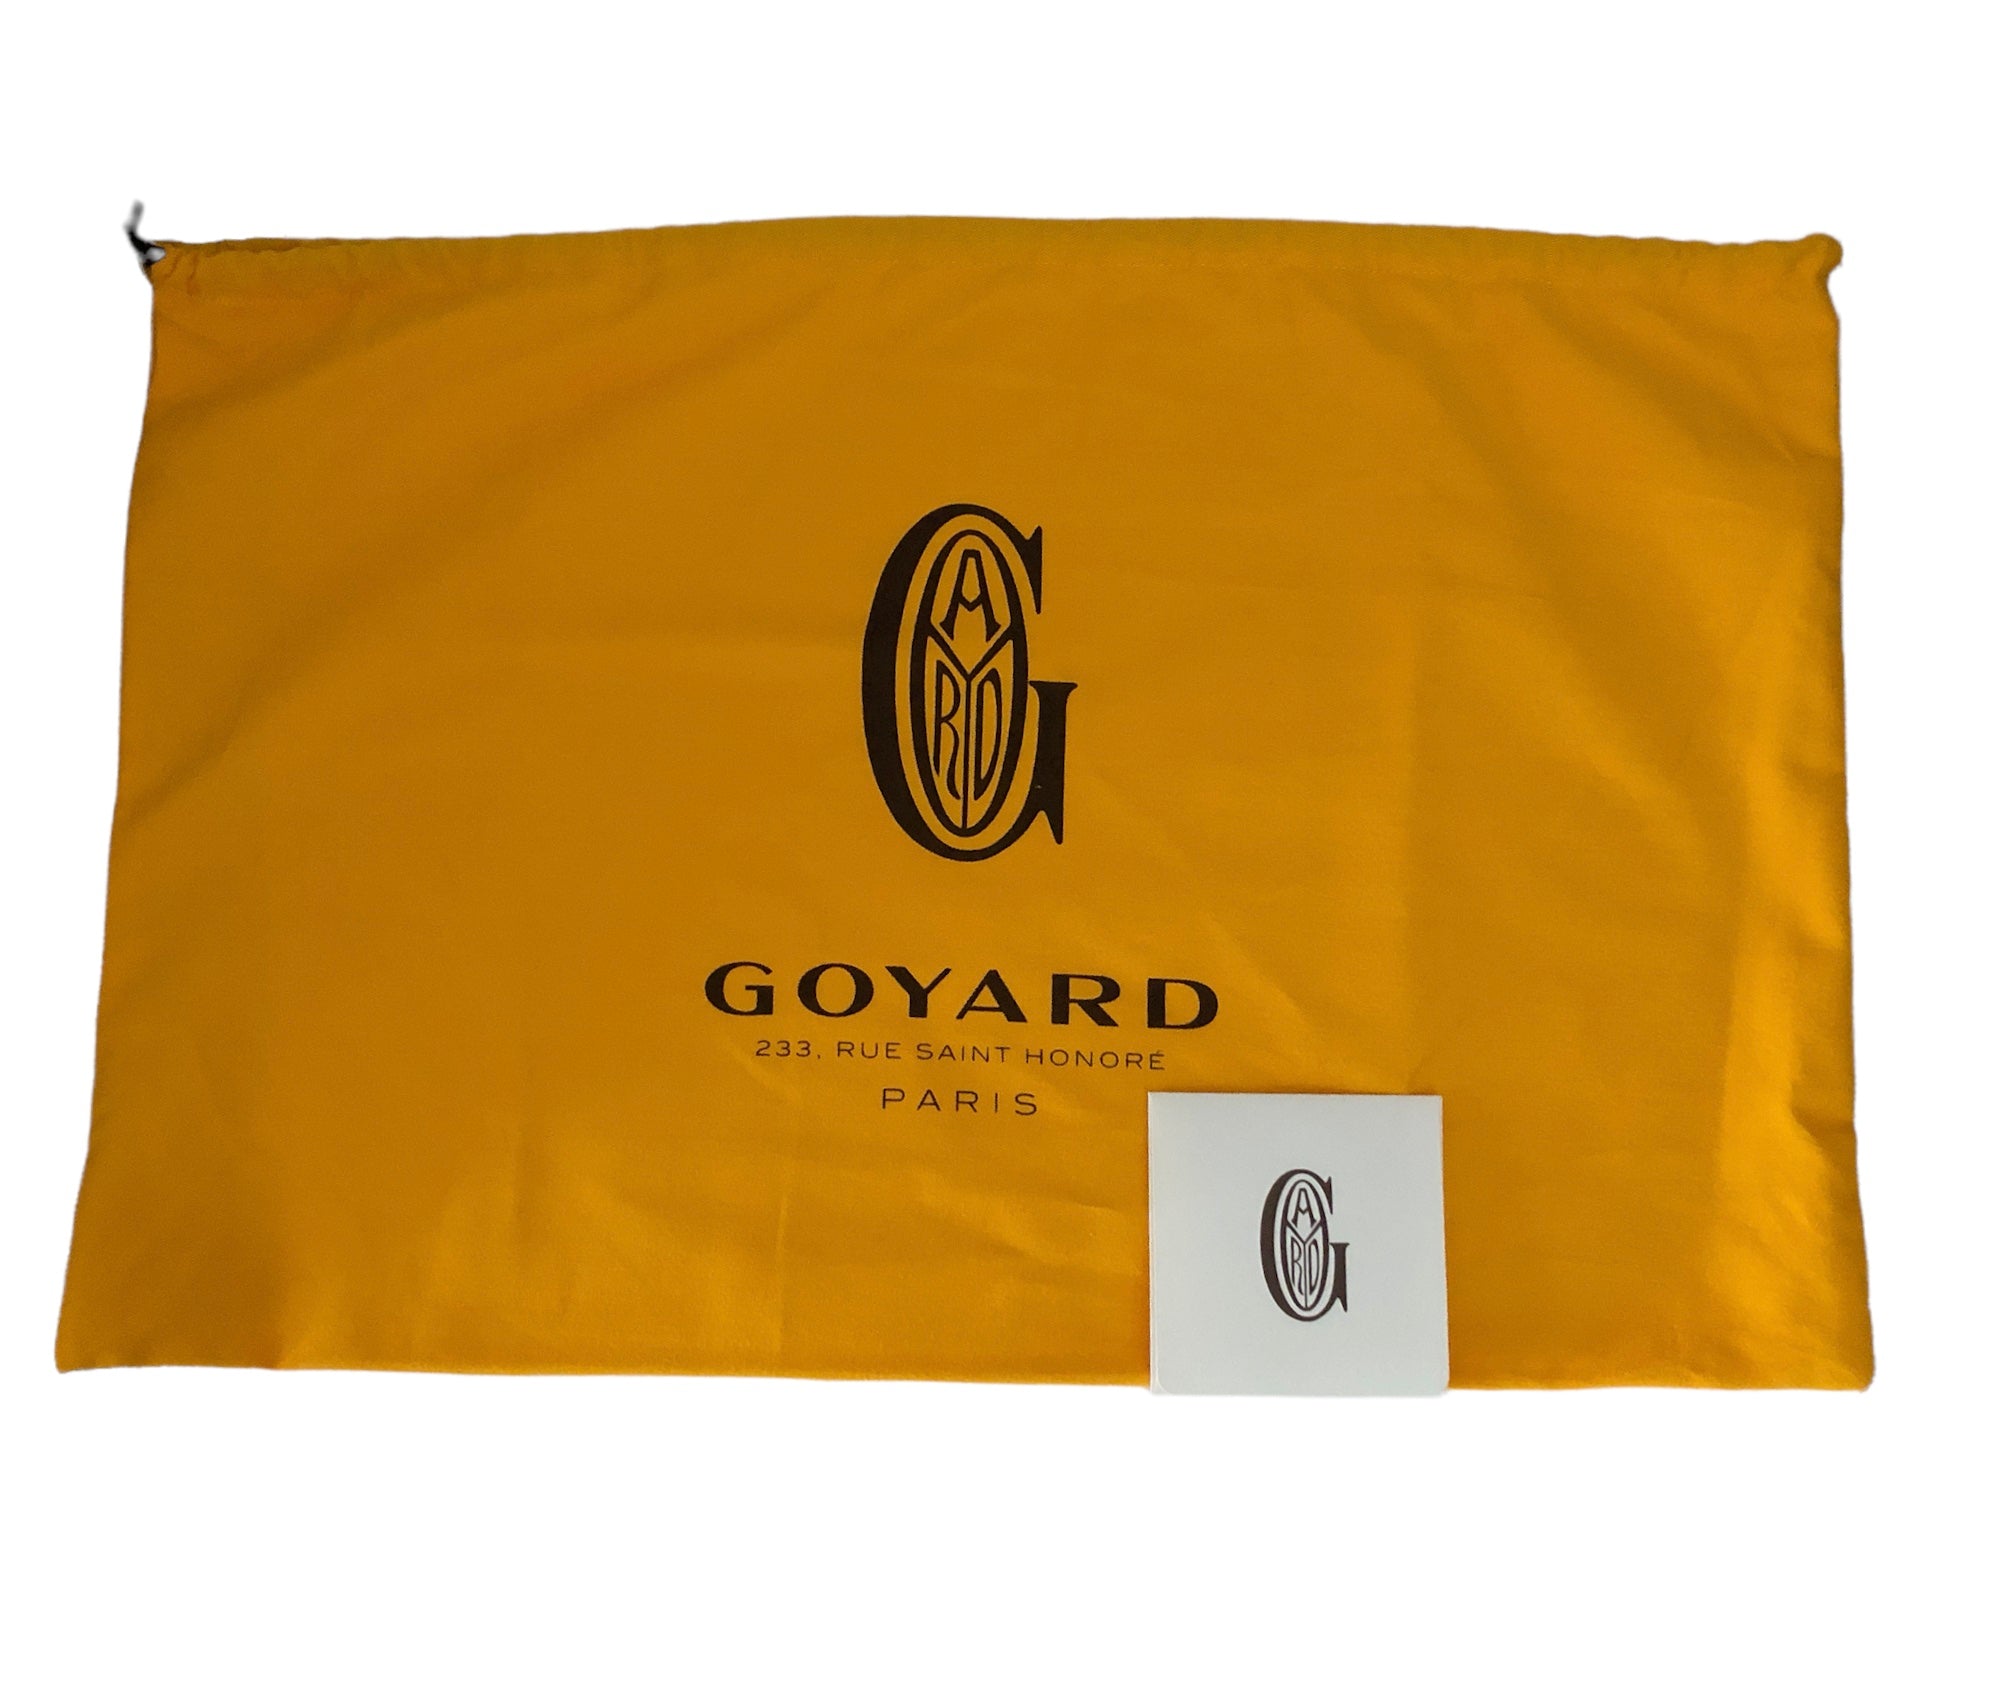 Goyard St. Louis PM – The Orange Box PH